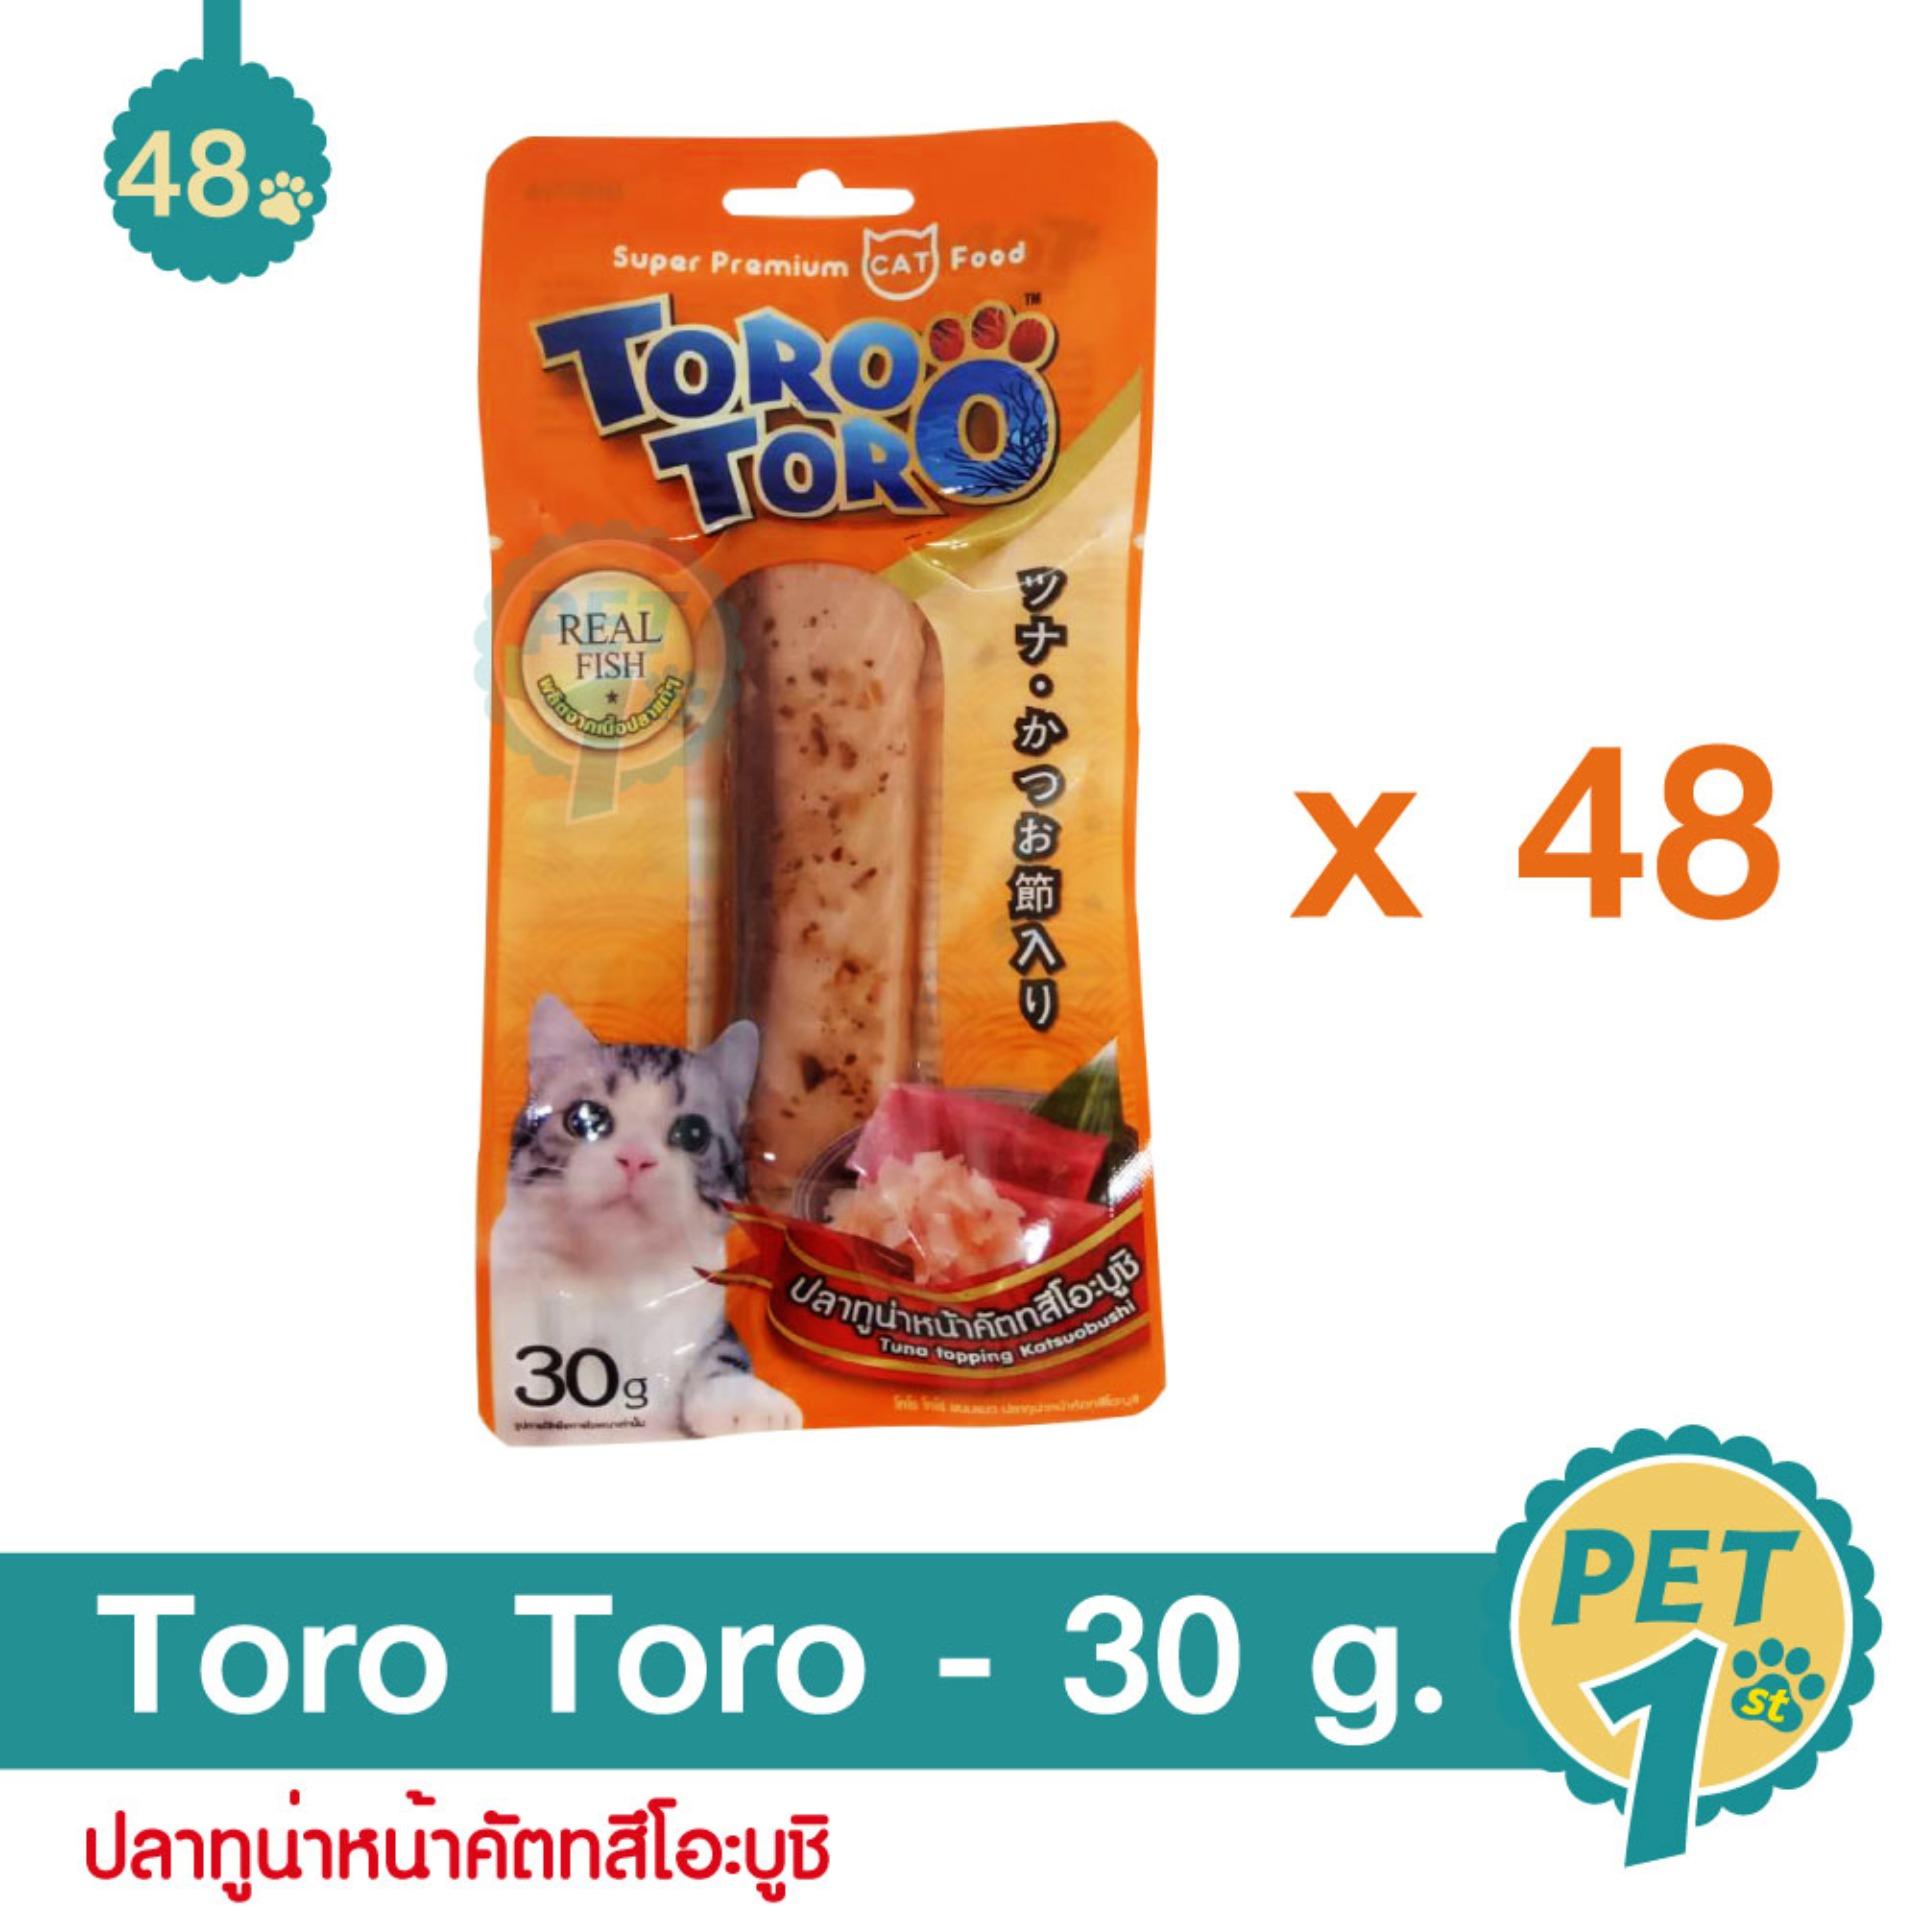 Toro Toro อาหารว่างสำหรับแมว ปลาทูน่าหน้าคัตทสึโอะบูชิ ผลิตจากเนื้อปลาแท้ 30 g./ซอง - 48 ซอง